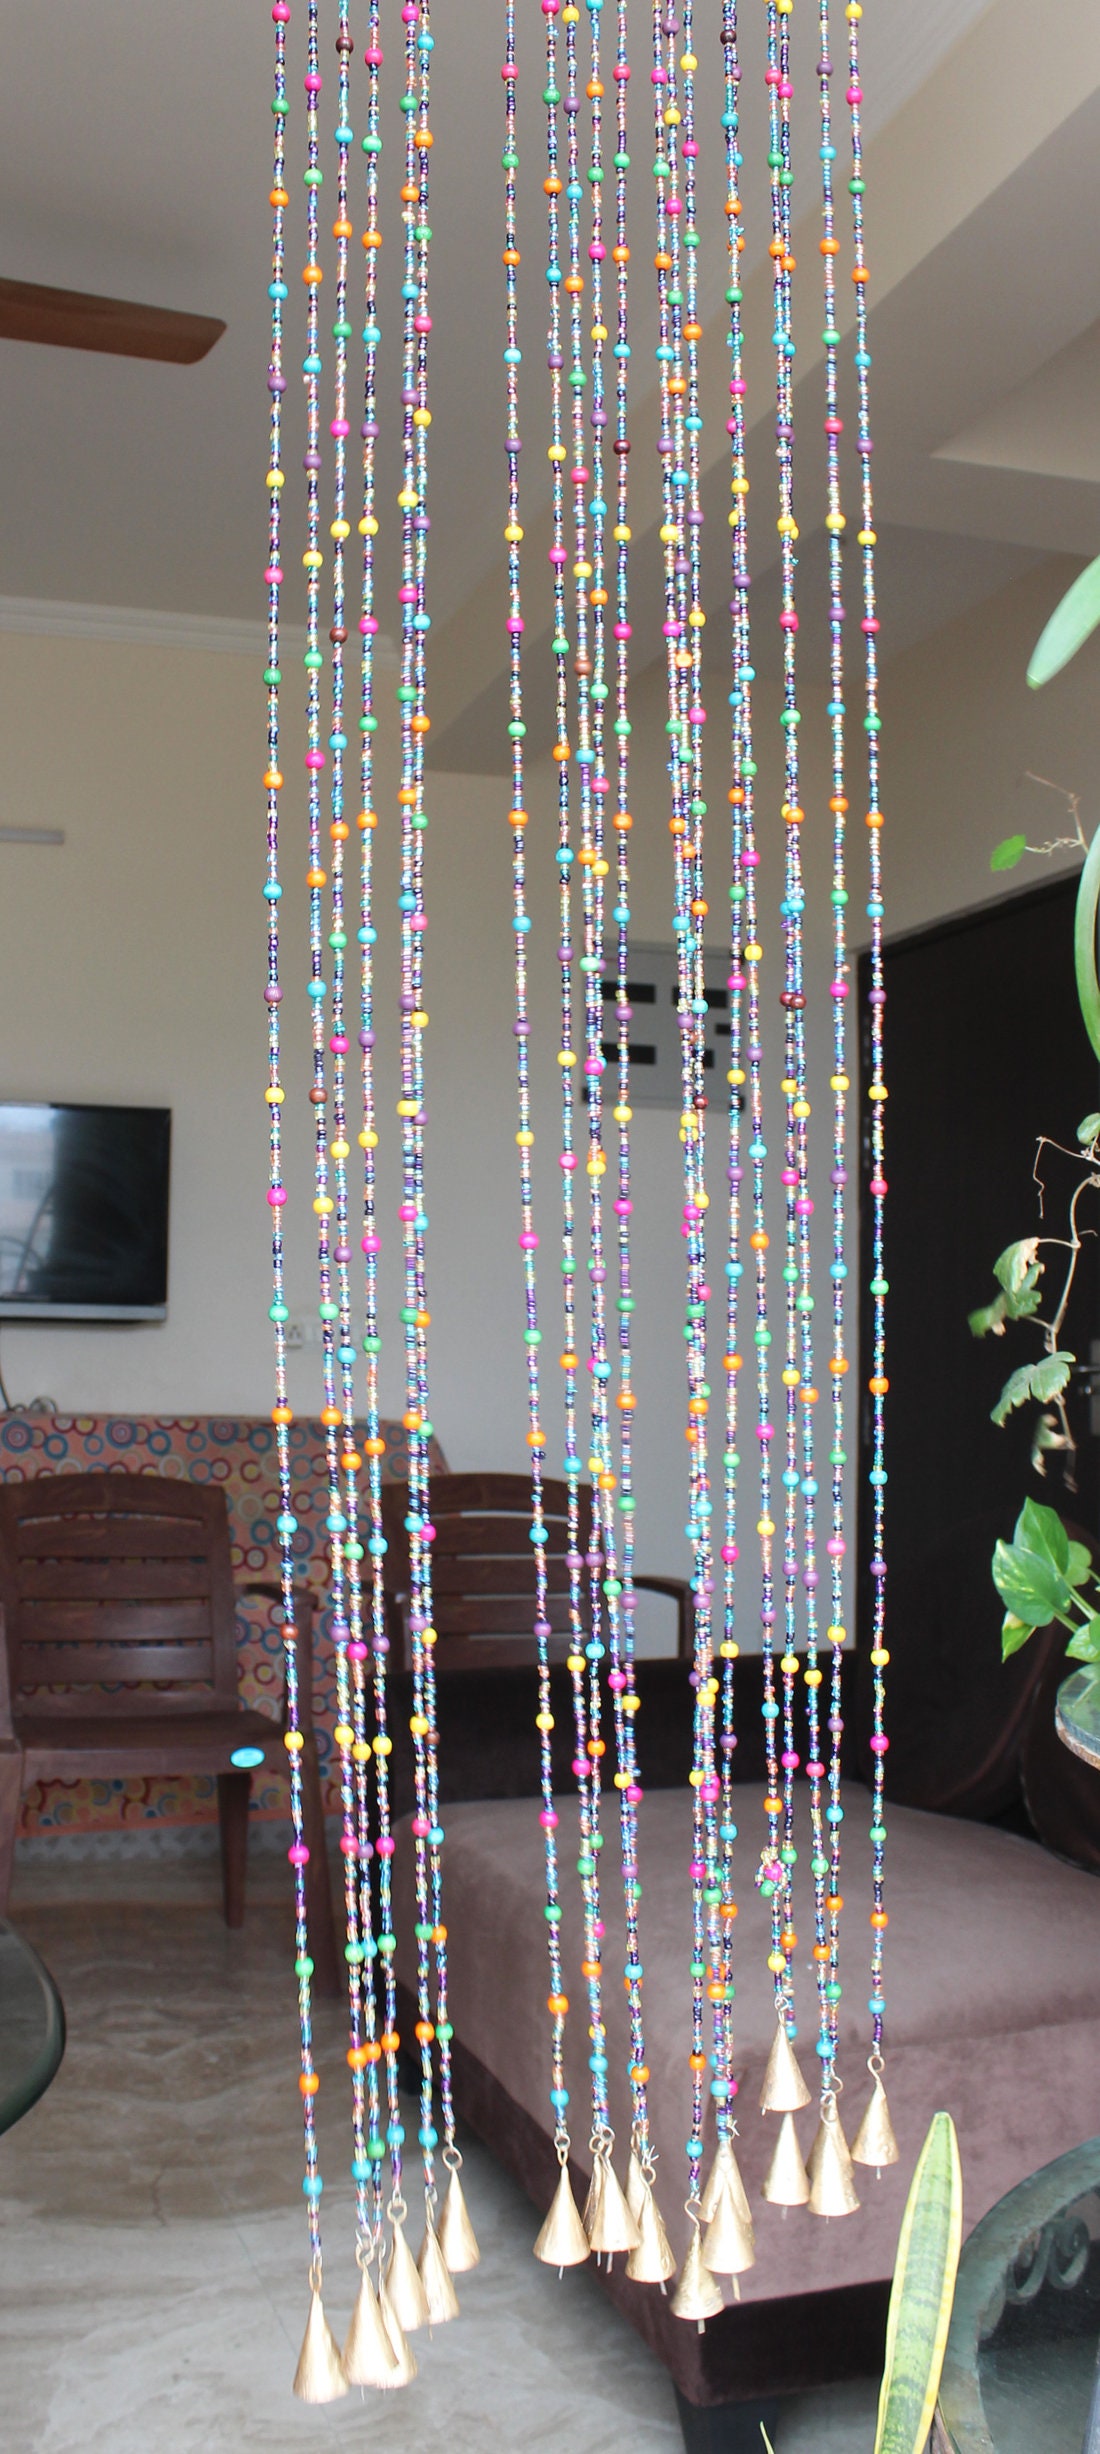 Rideau de perles hippie bohème pour porte, perles de verre multicolores,  longueur de 76 po. -  France